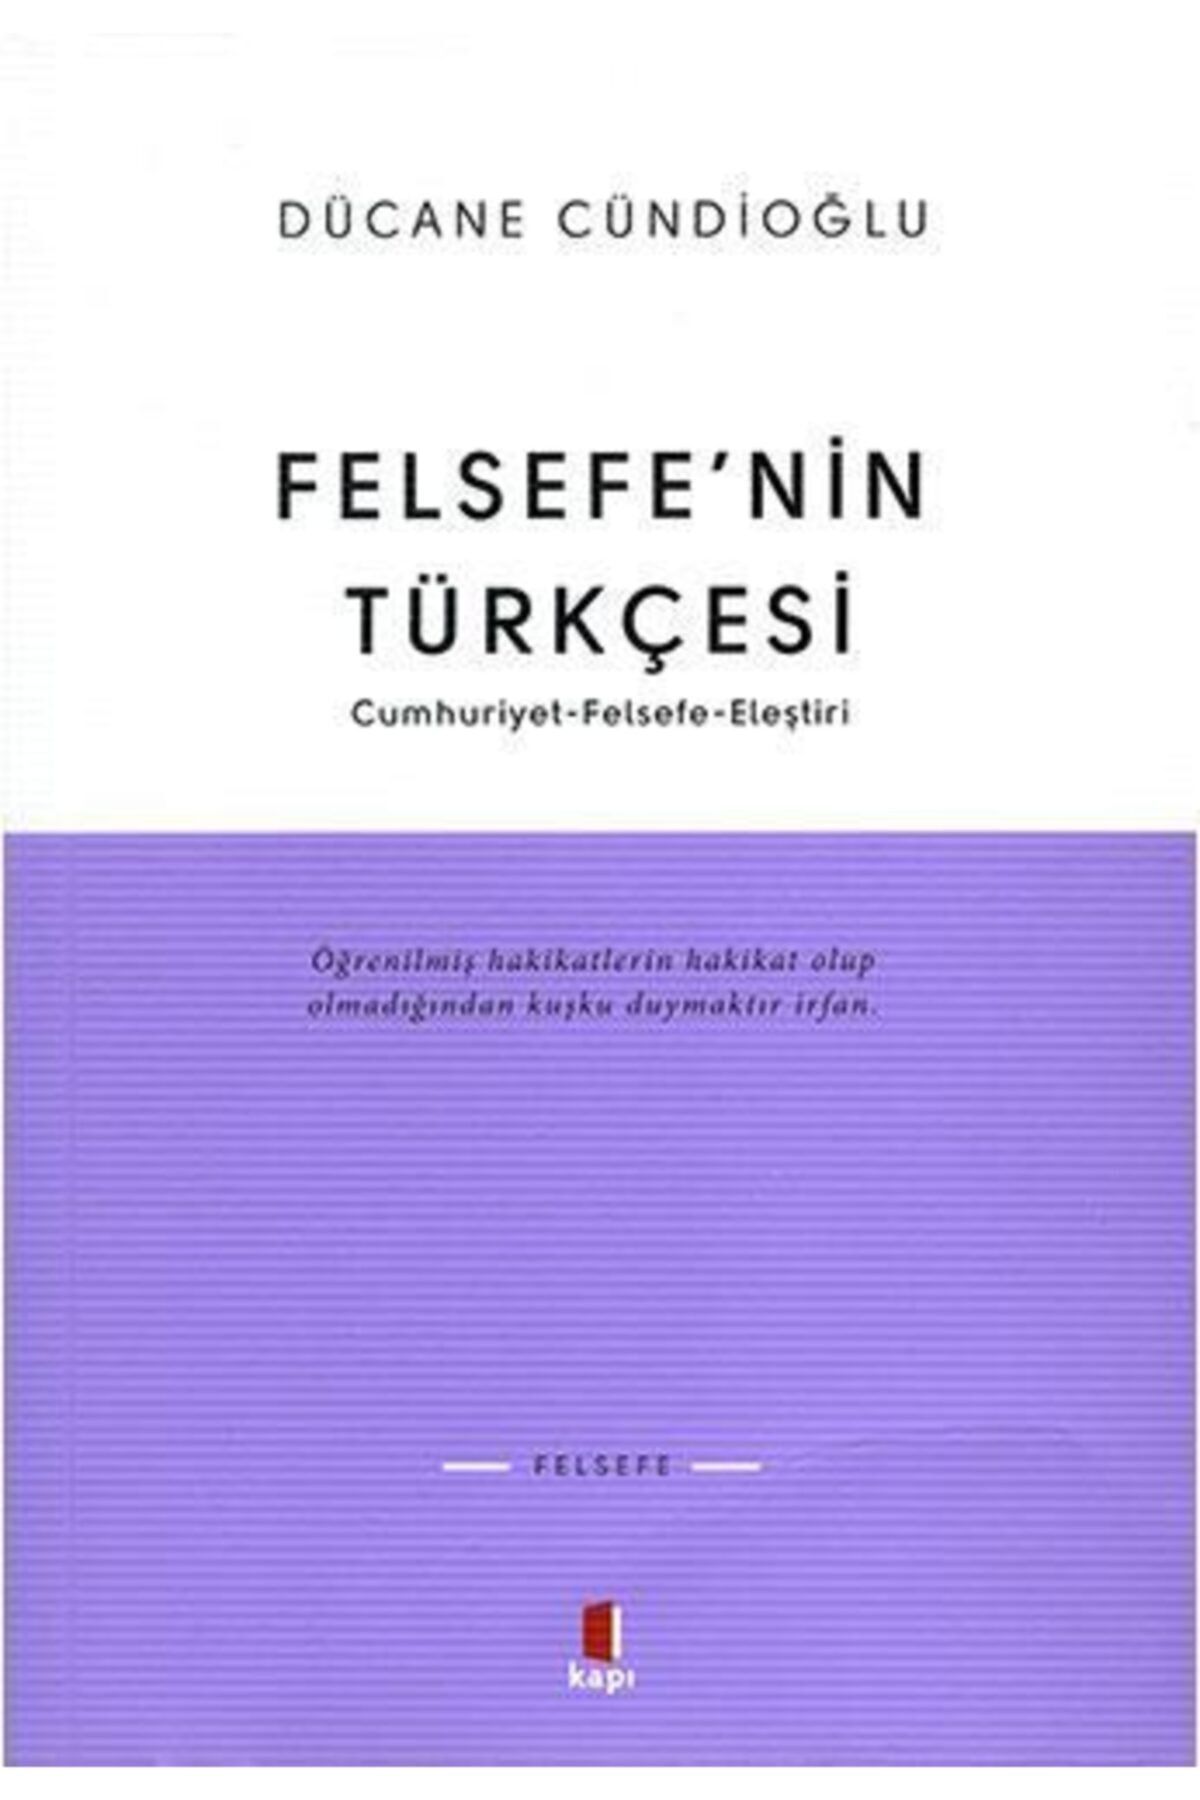 Kapı Yayınları Felsefenin Türkçesi   Dücane Cündioğlu